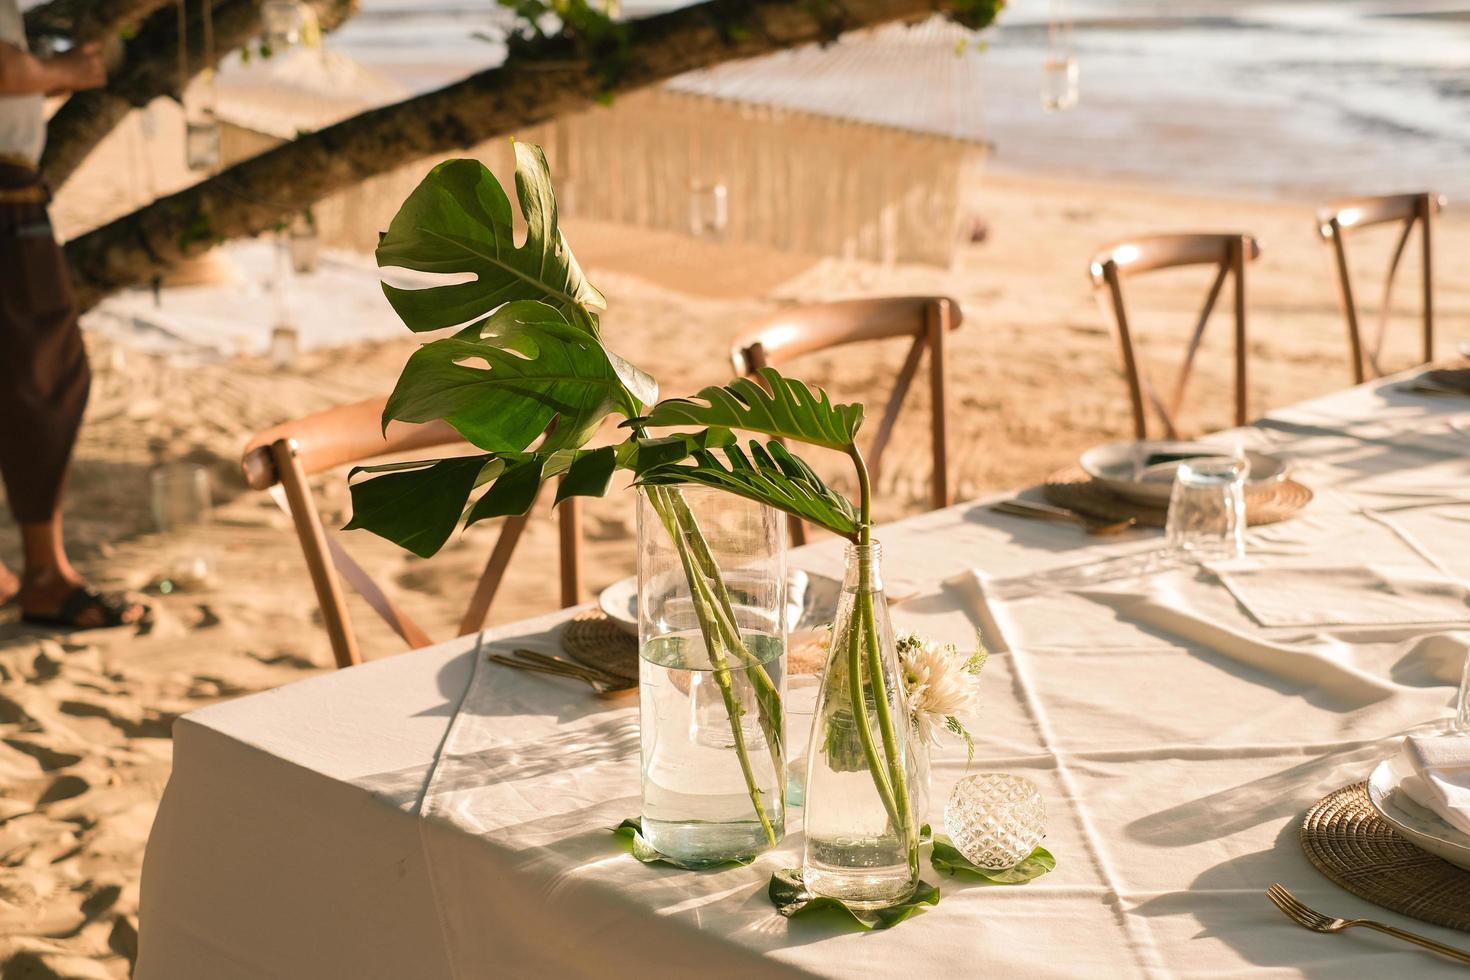 hermosa mesa preparada para una cena romántica en la playa con flores y velas. catering para una cita romántica, una boda o un fondo de luna de miel. cena en la playa al atardecer. foco seleccionado. foto